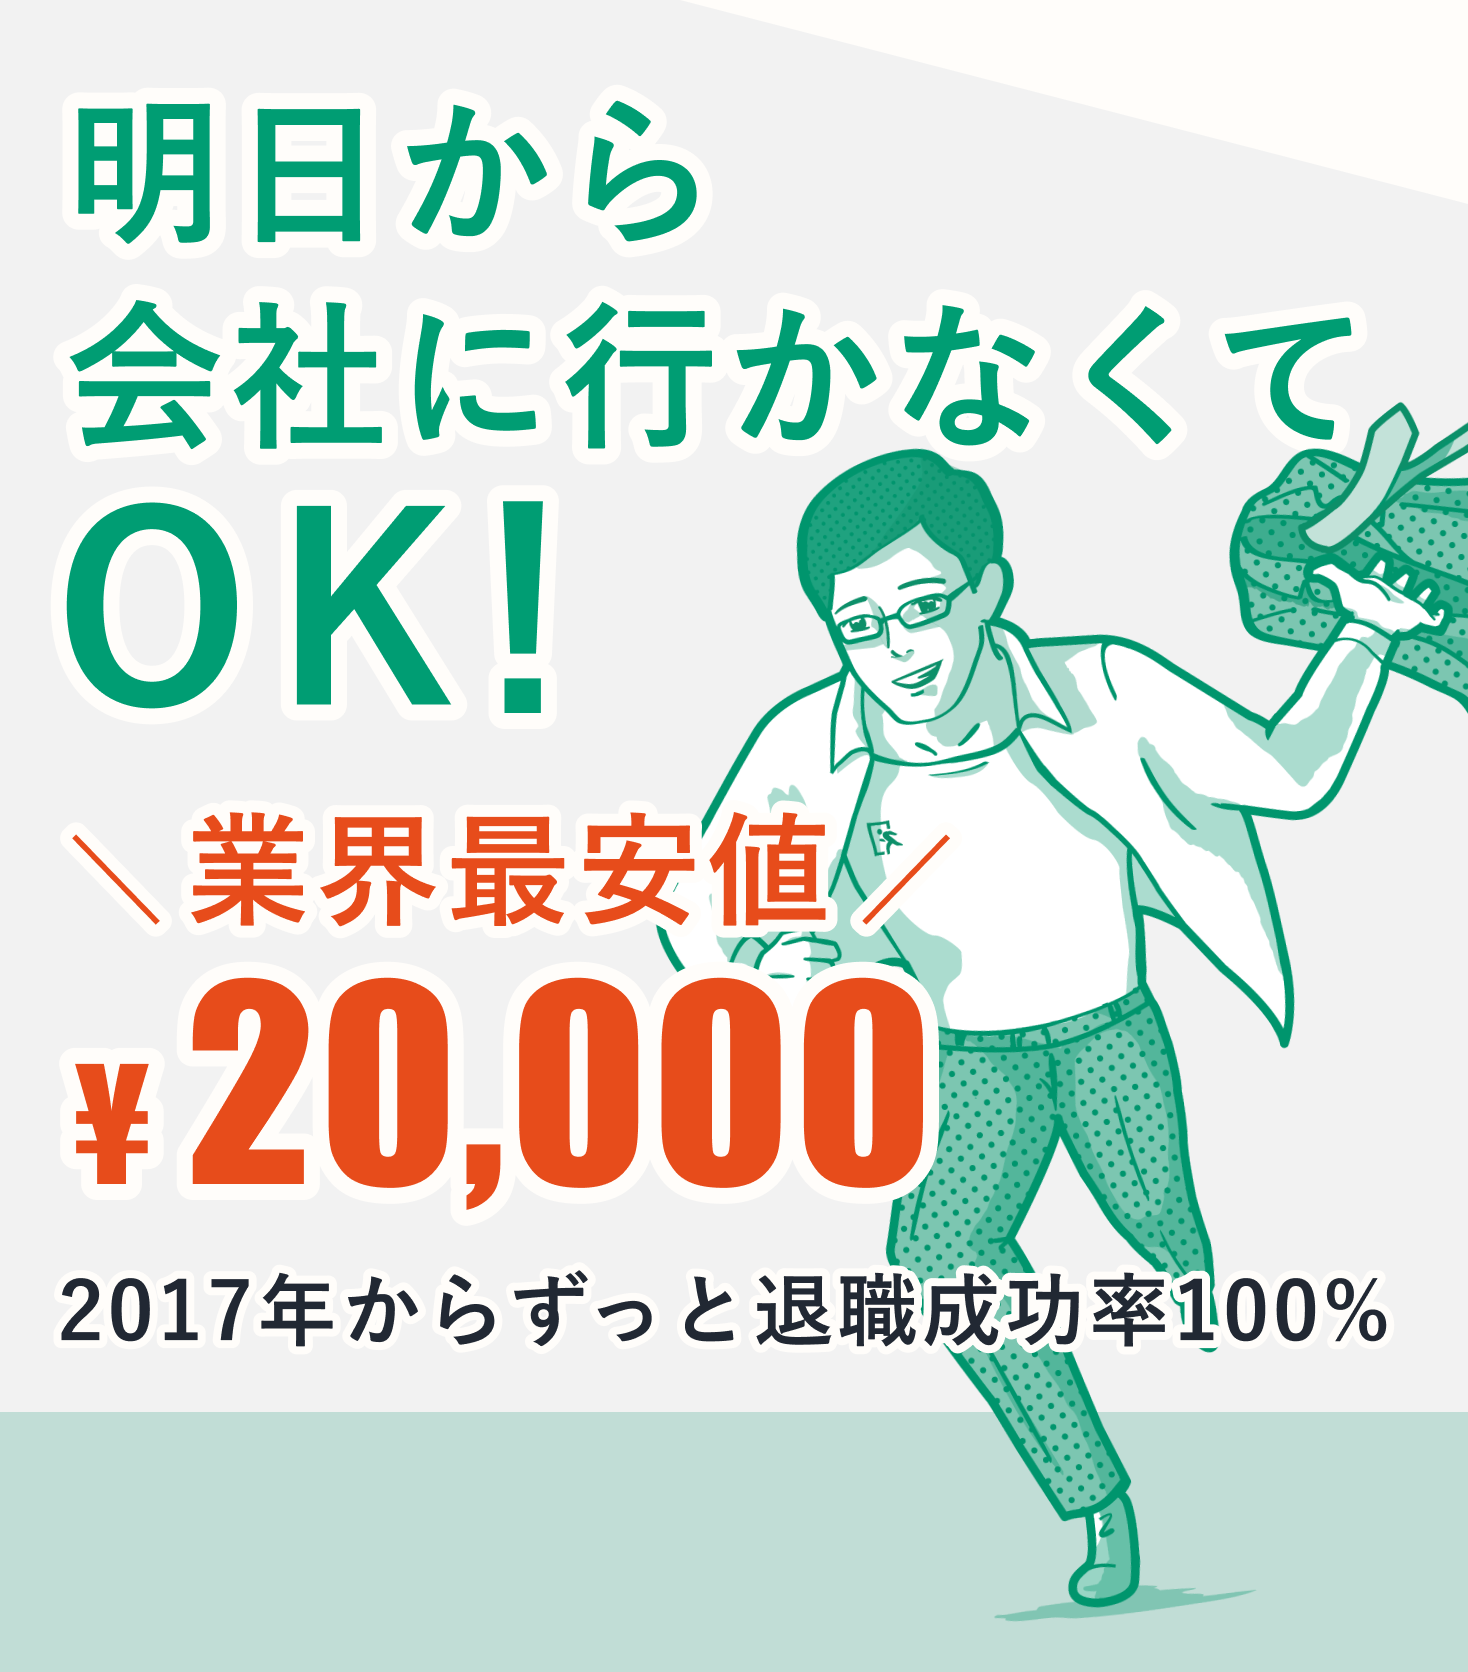 明日から会社に行かなくてOK！業界最安値20,000円。2017年からずっと退職成功率100%